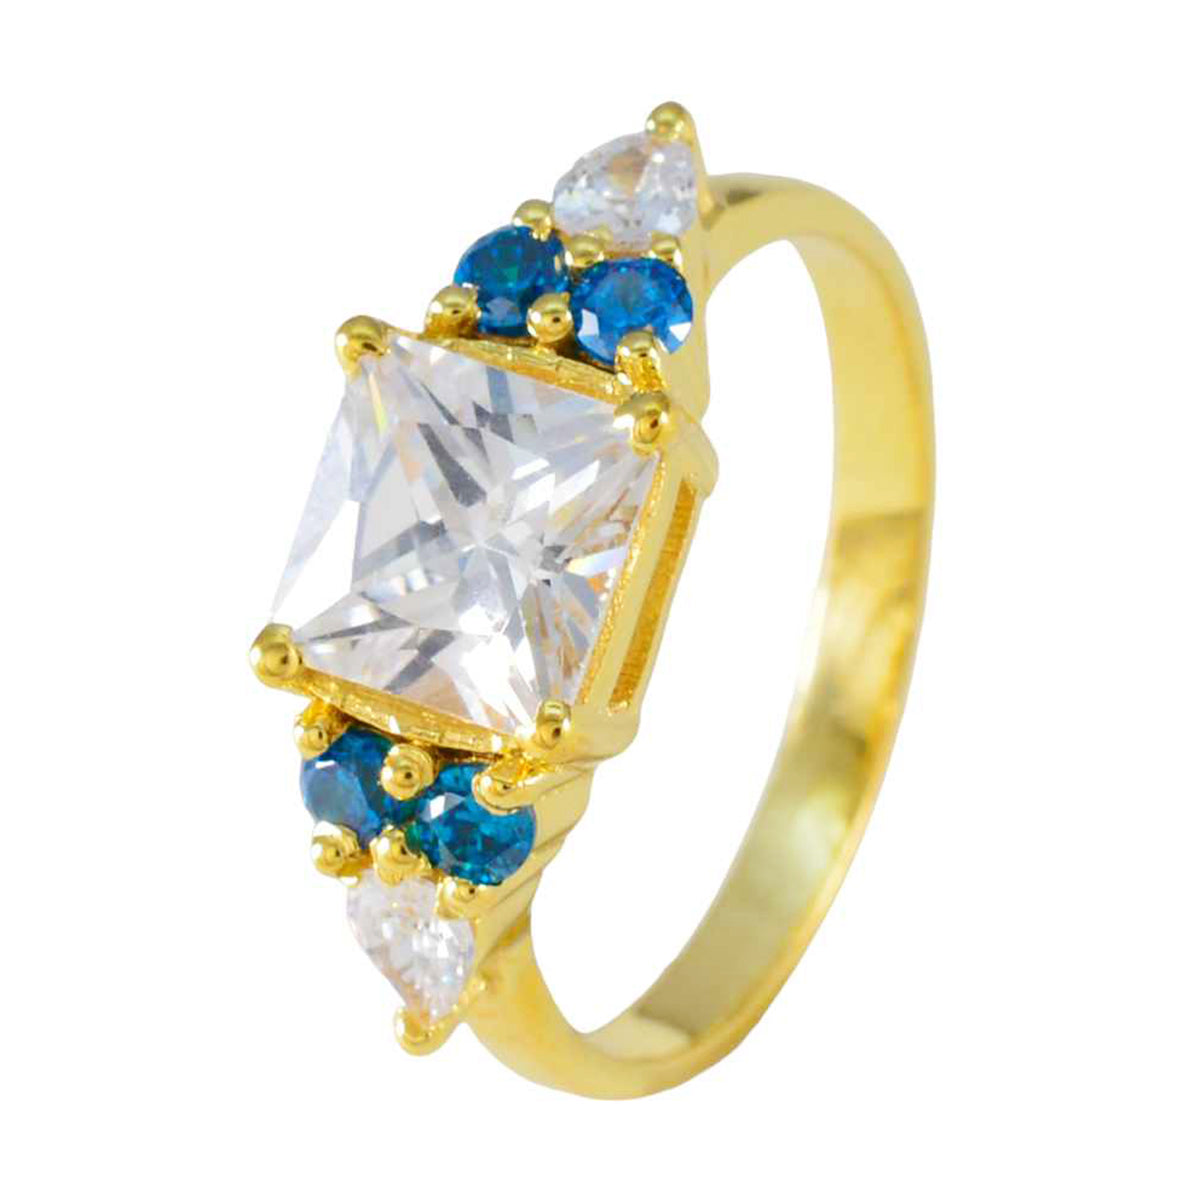 riyo förtjusande silverring med gul guldplätering blå topas cz sten fyrkantig form stift inställning smycken alla hjärtans dag ring